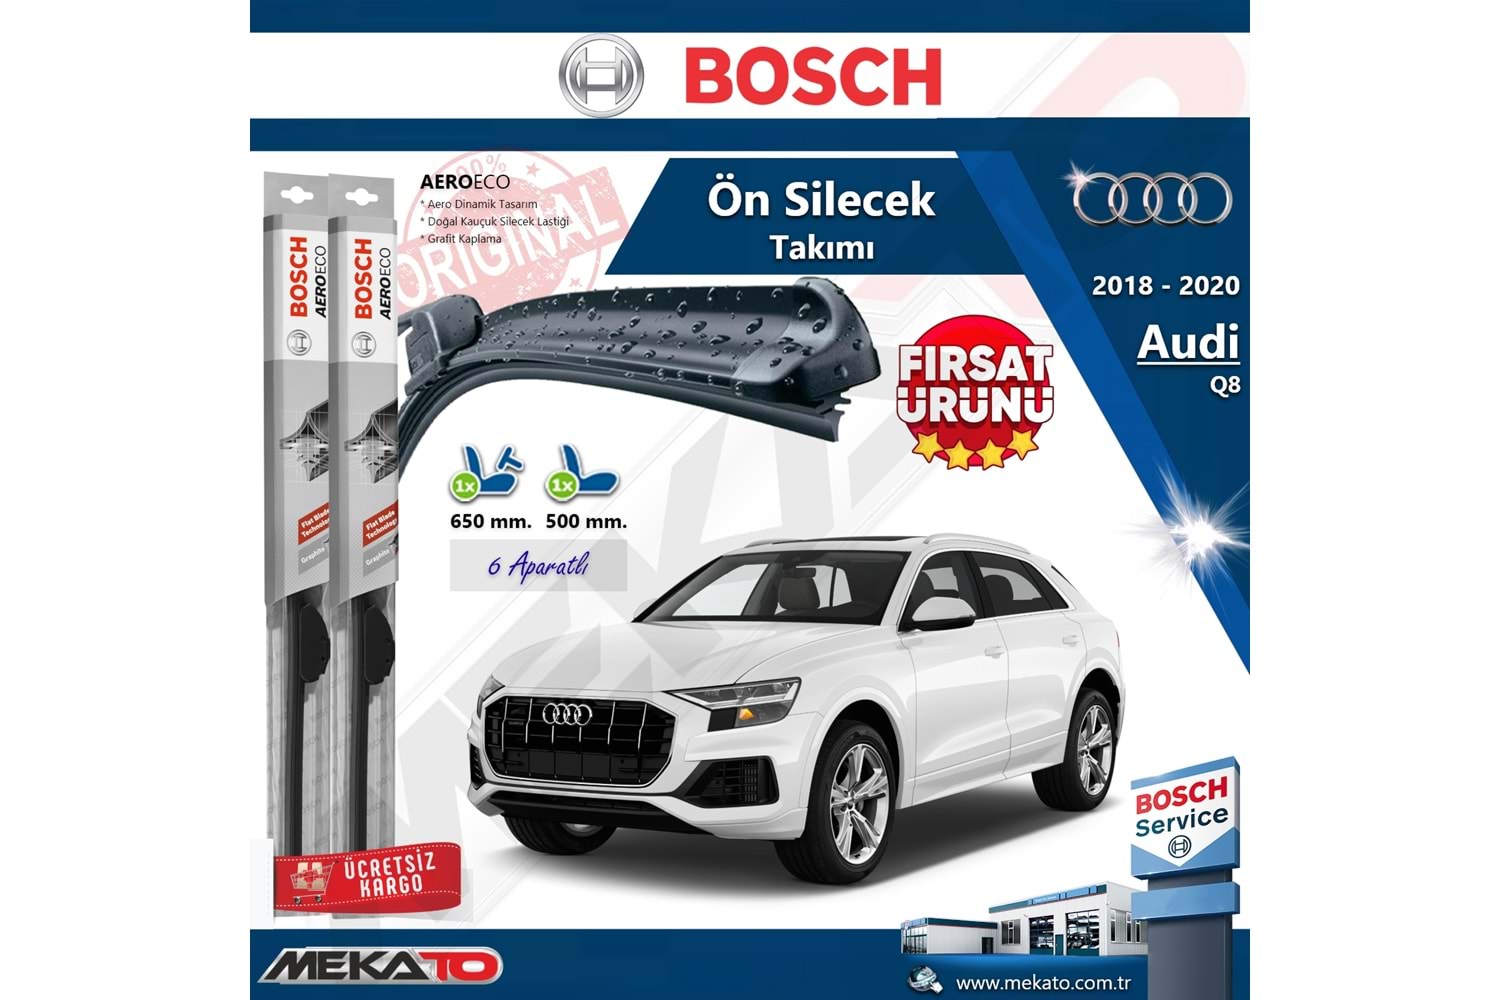 Audi Q8 Ön Silecek Takımı Bosch Aero Eco 2018-2020